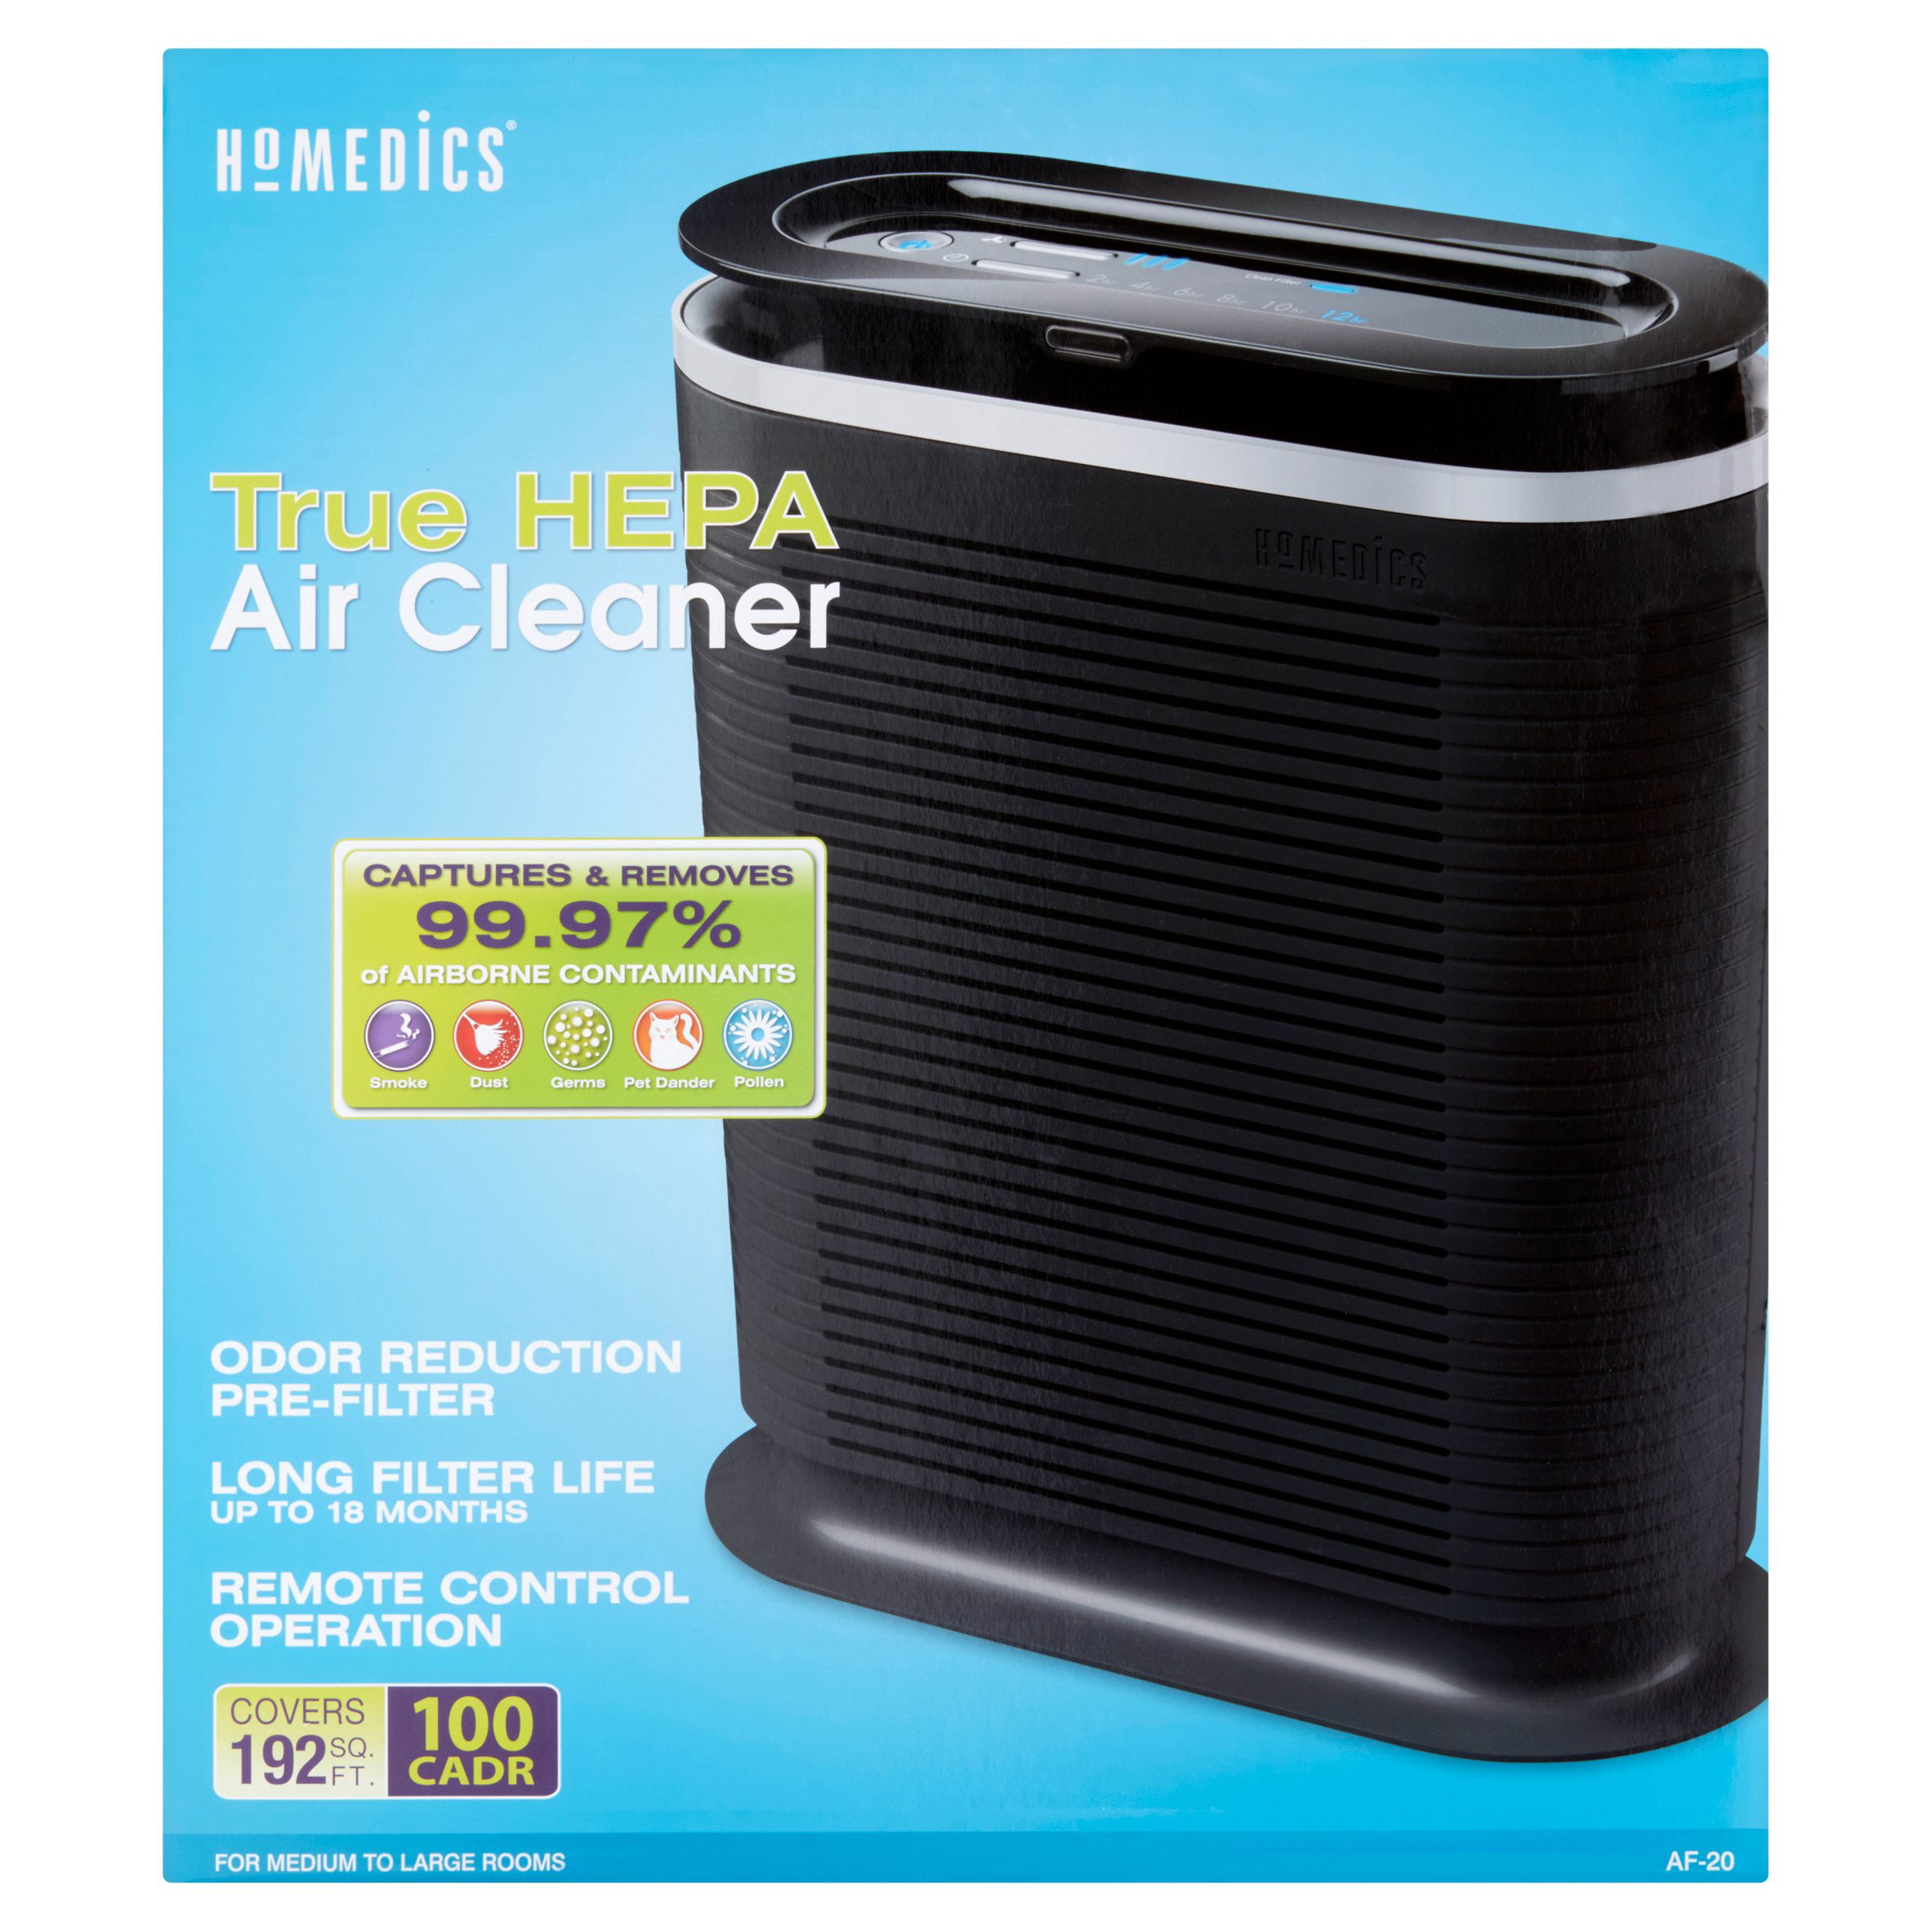 HoMedics True HEPA Air Cleaner - Walmart.com